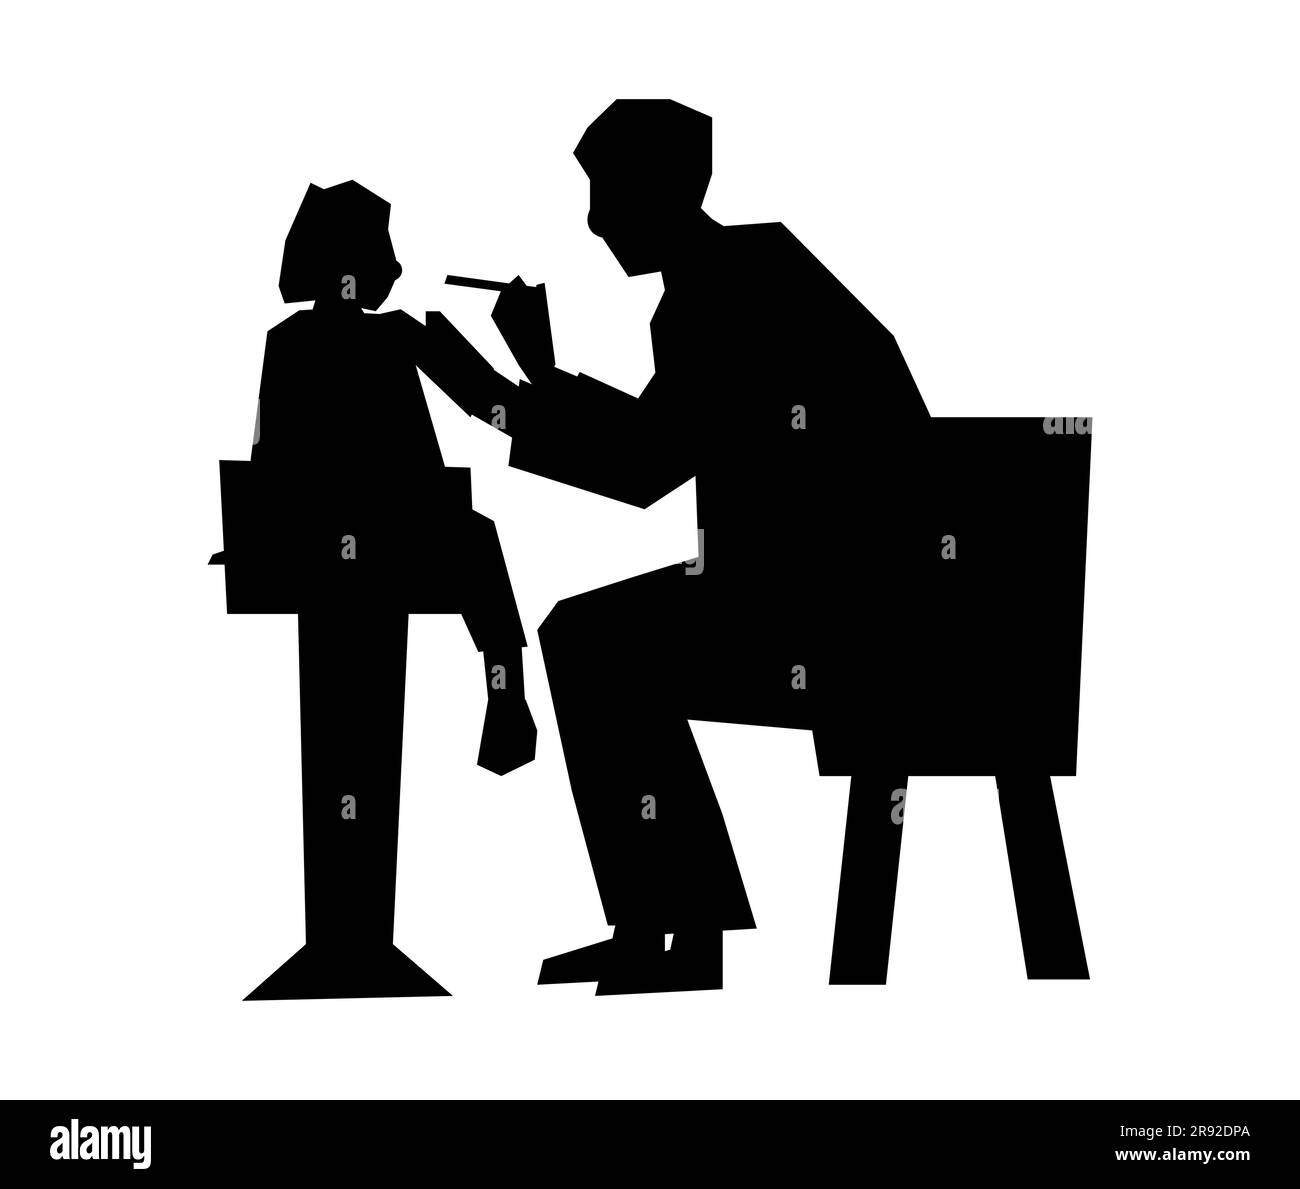 Schwarze Silhouette eines männlichen Zahnarztes, der ein Mädchen untersucht, ein Arzt, der ein Kind untersucht, Kehlkopfkontrolle bei Kindern, Vektor isoliert auf weißem Hintergrund Stock Vektor